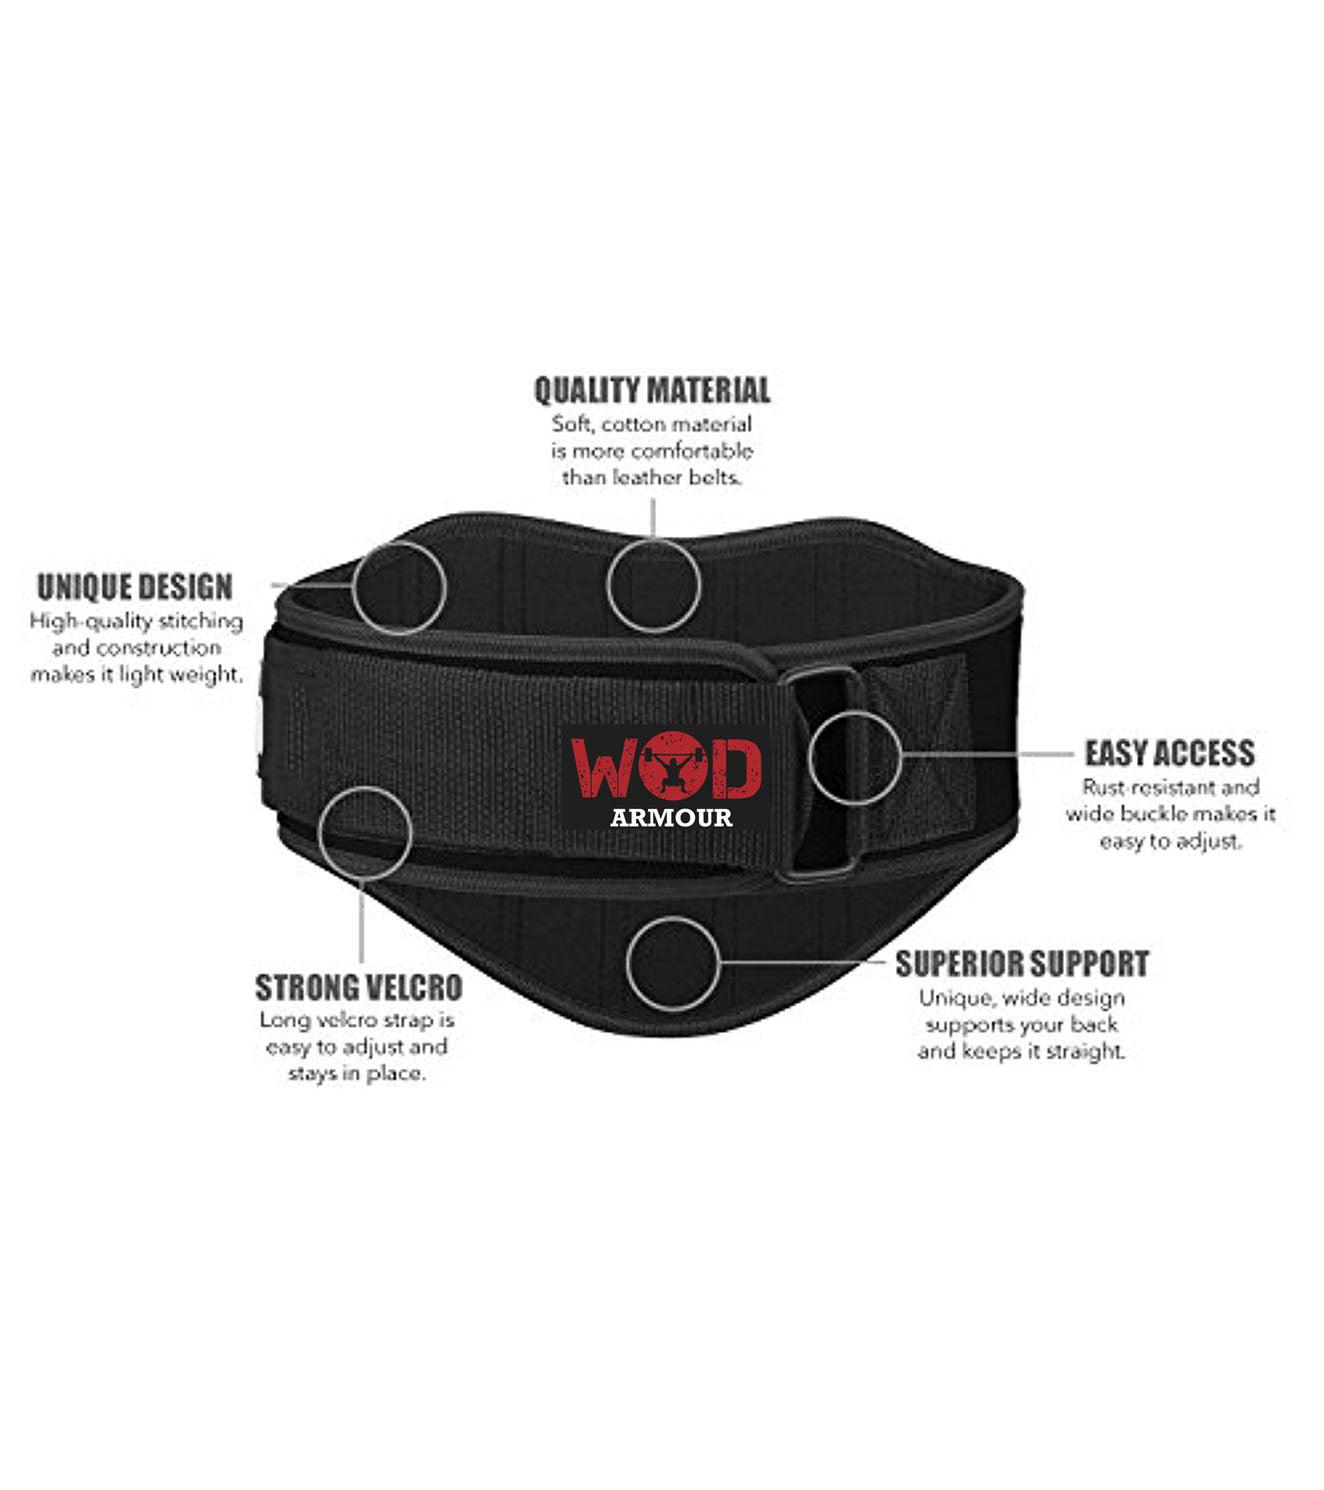 Weight lifting Belt - wodarmour